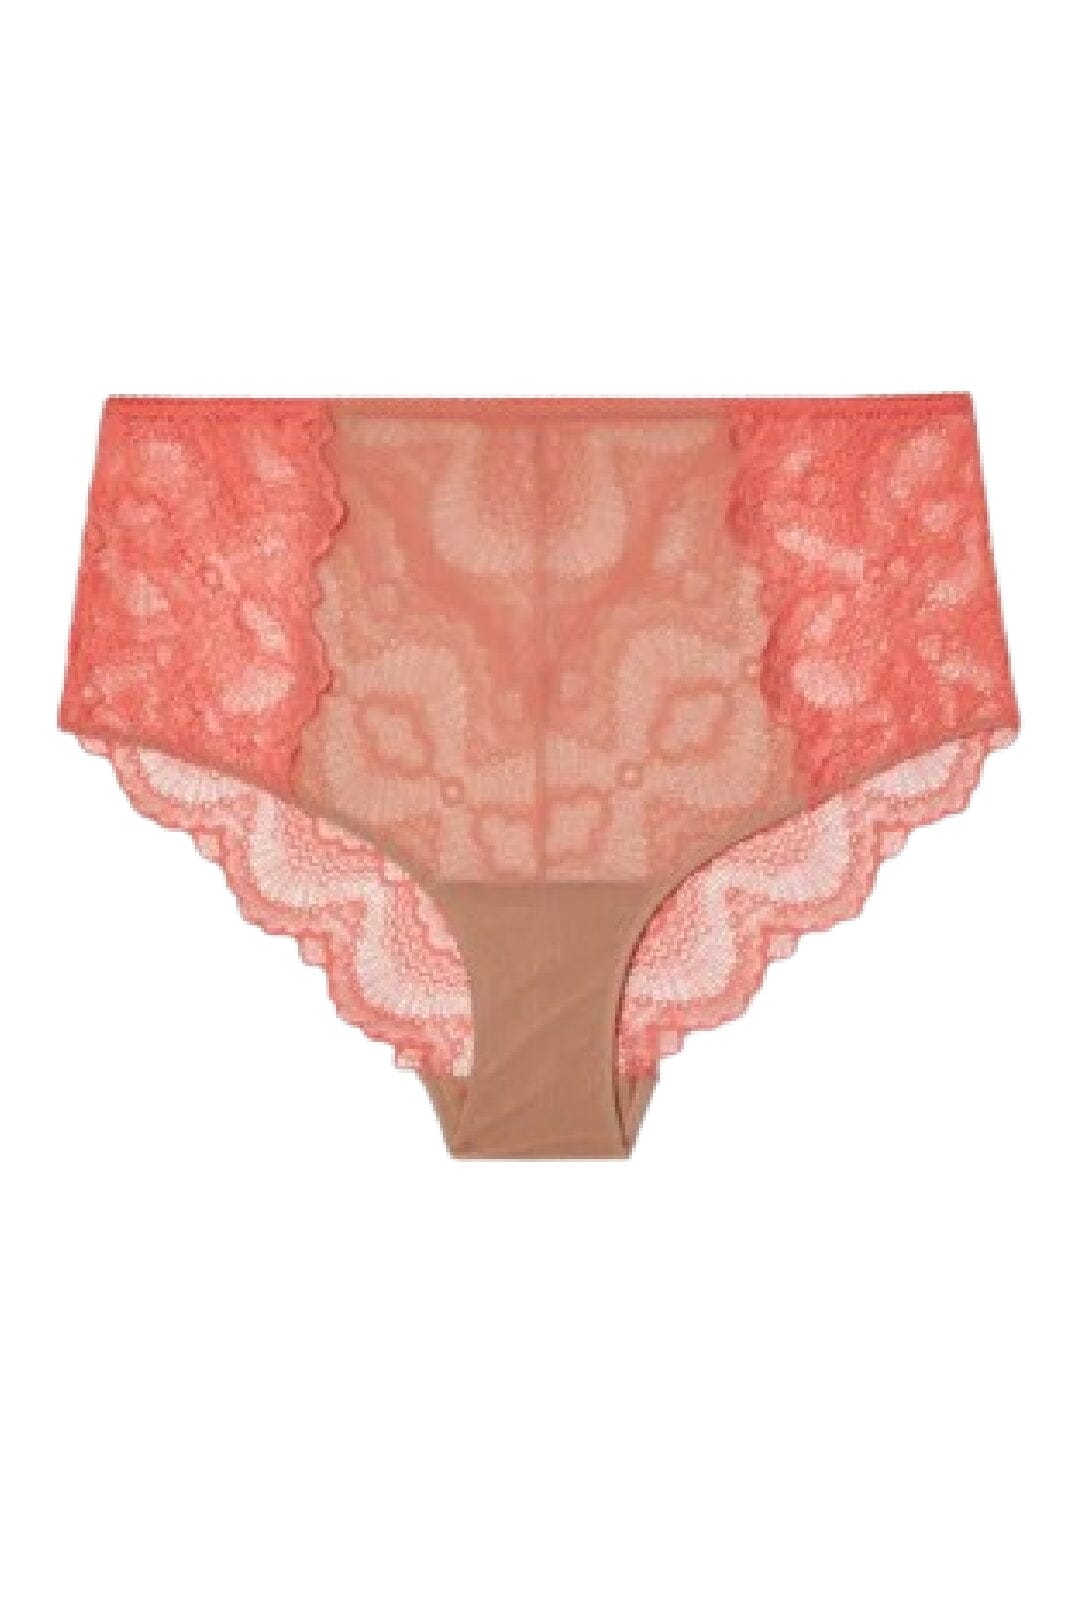 Understatement Underwear - Lace Mesh Highwaist Briefs - Coral/Sand Trusser 